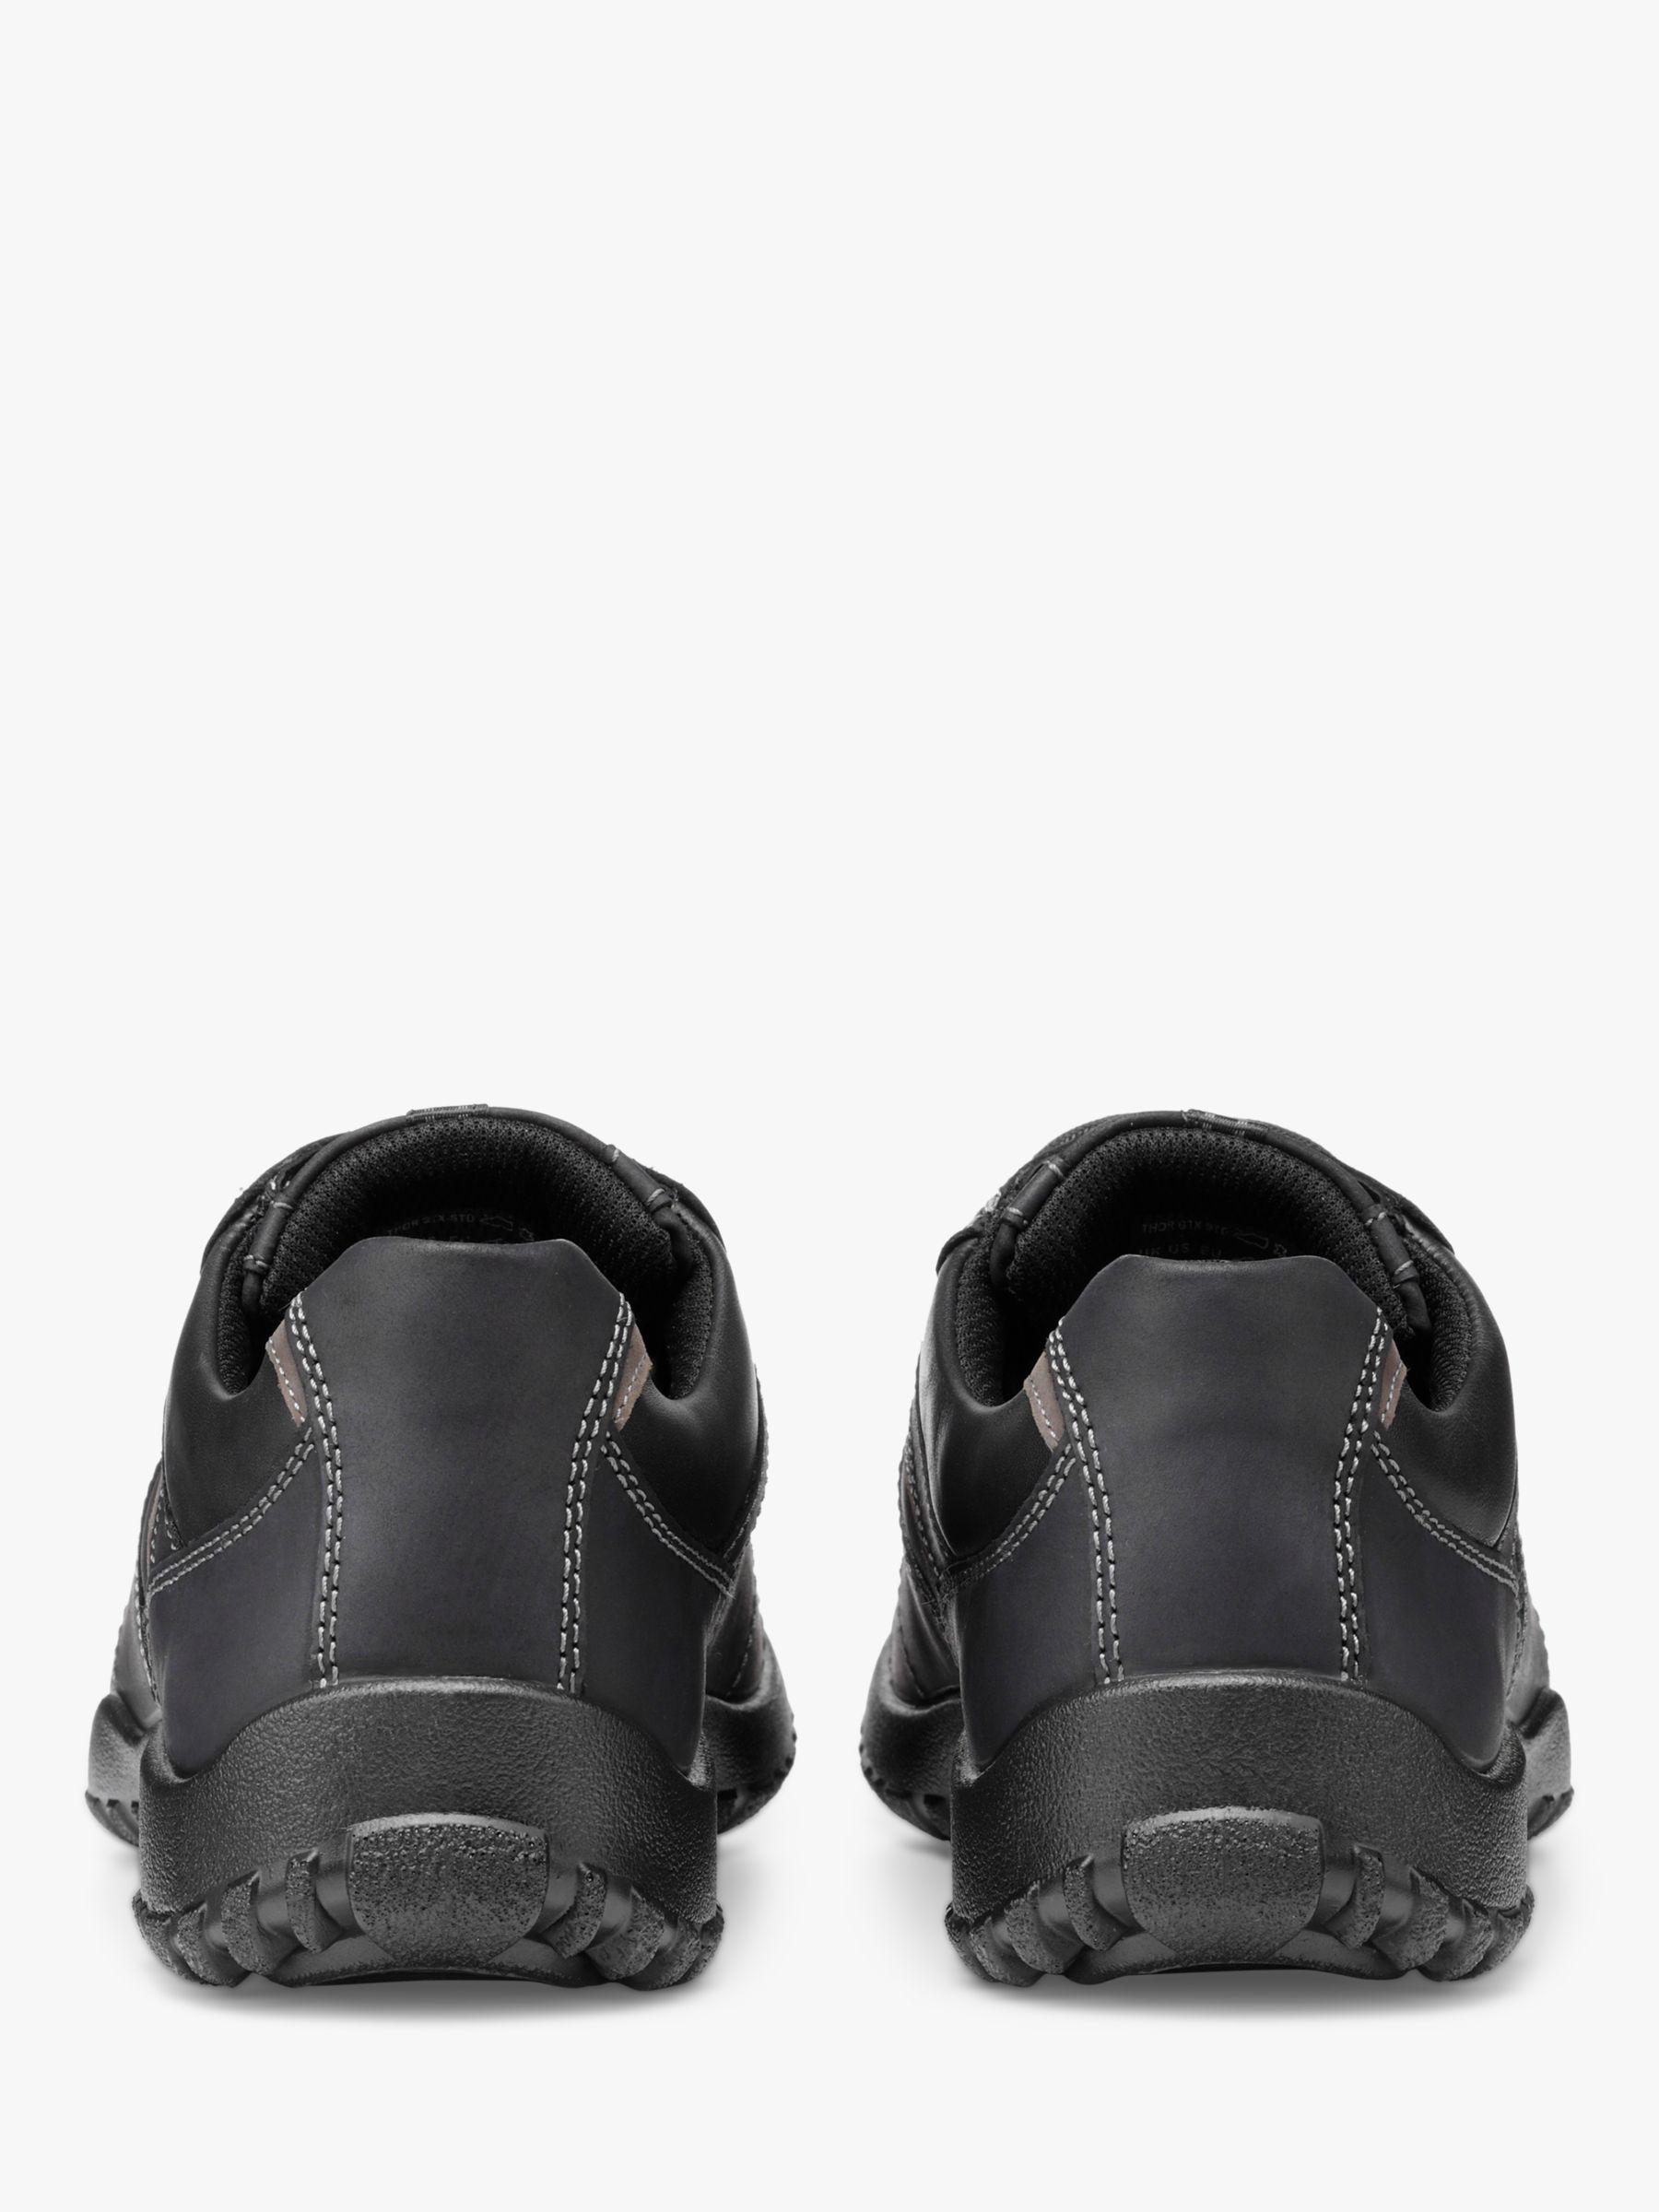 Hotter Thor II Waterproof Walking Shoes, Black, 6S